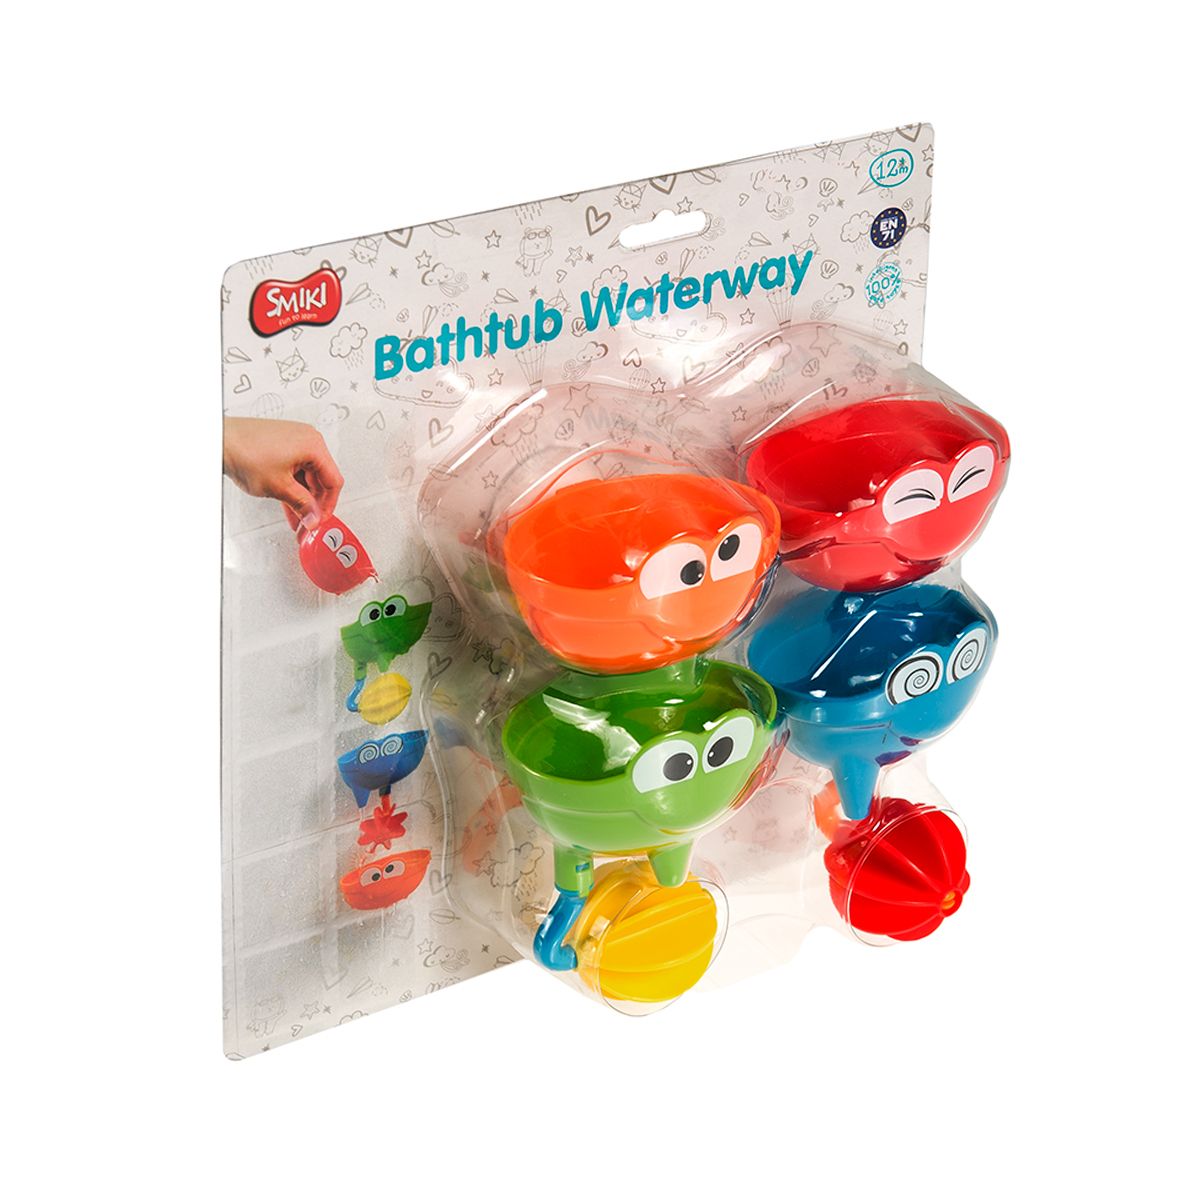 Interactive bath toys